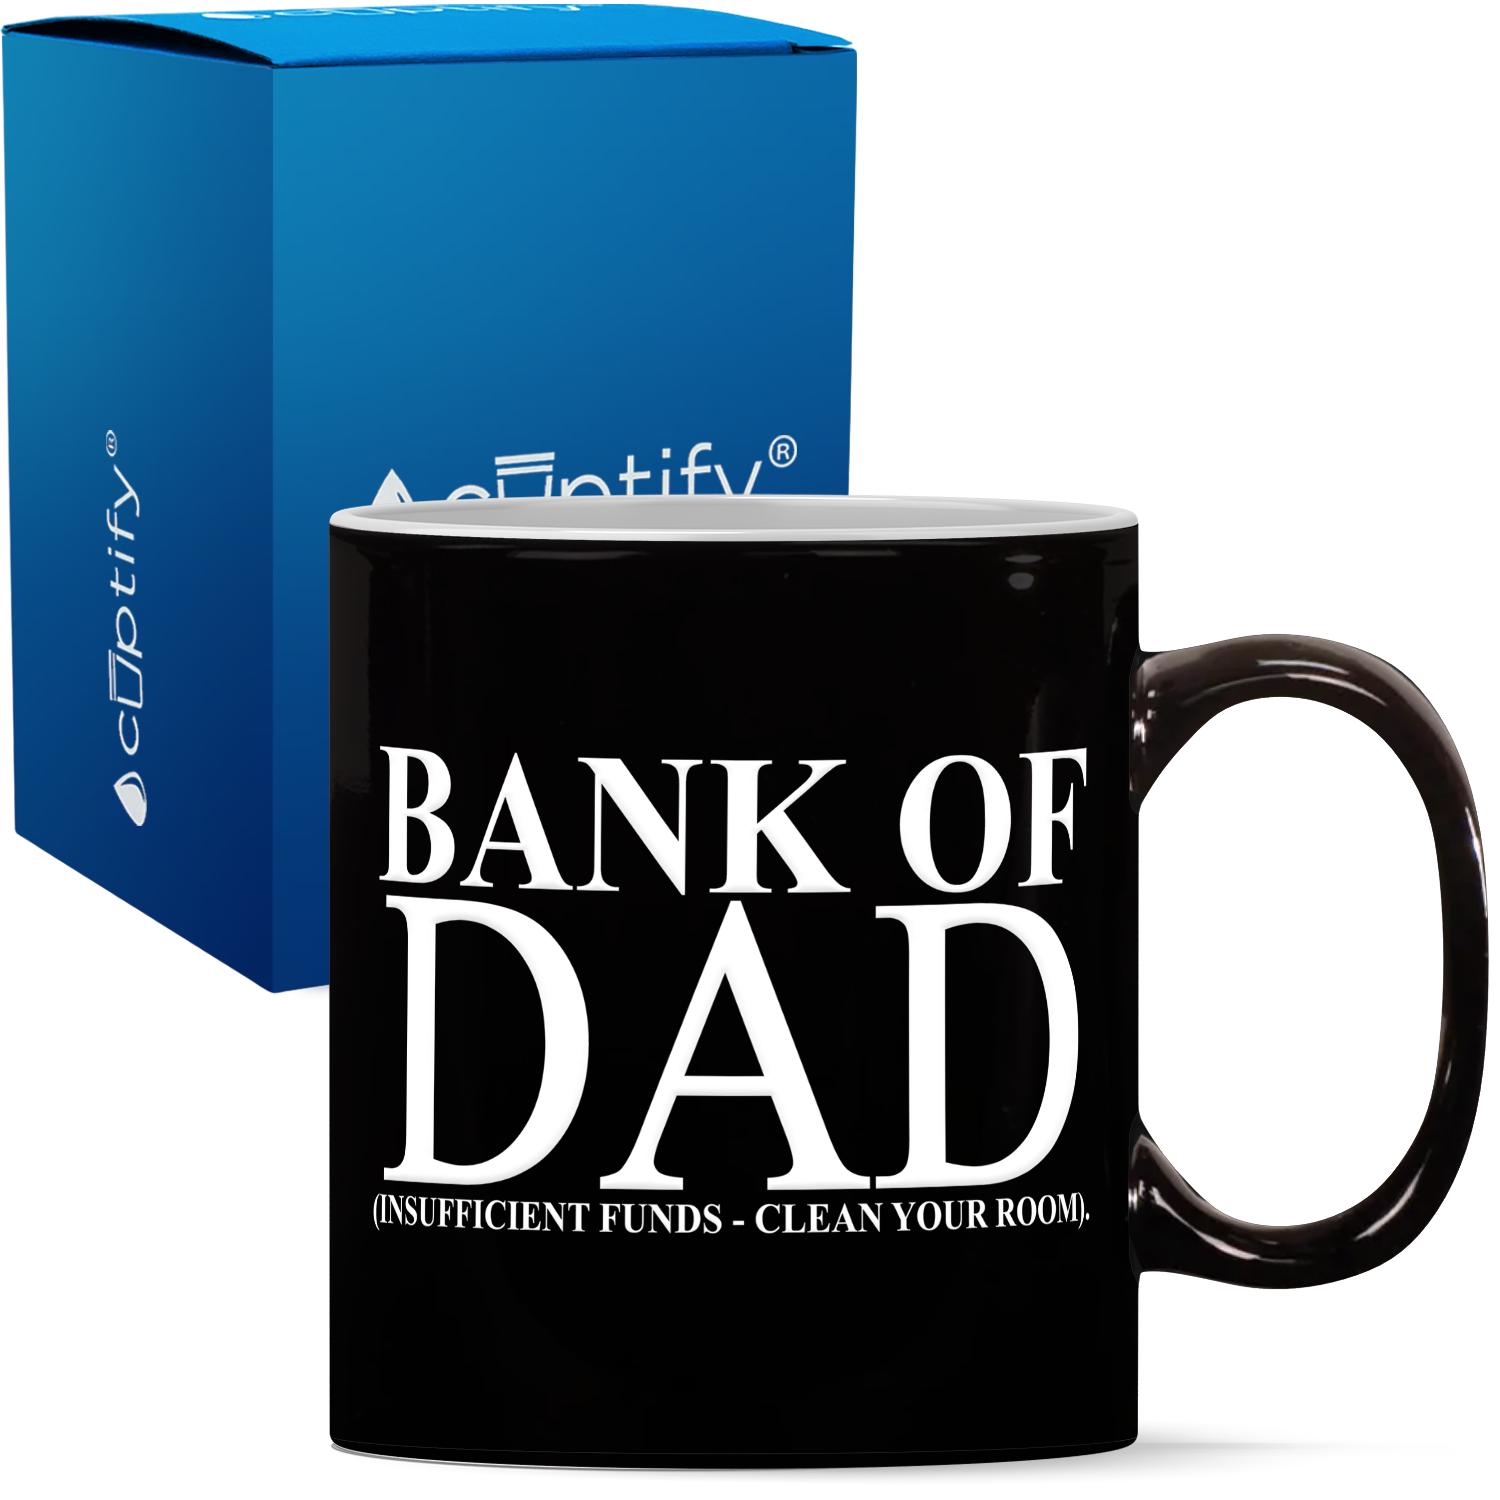 Bank of Dad 11oz Coffee Mug